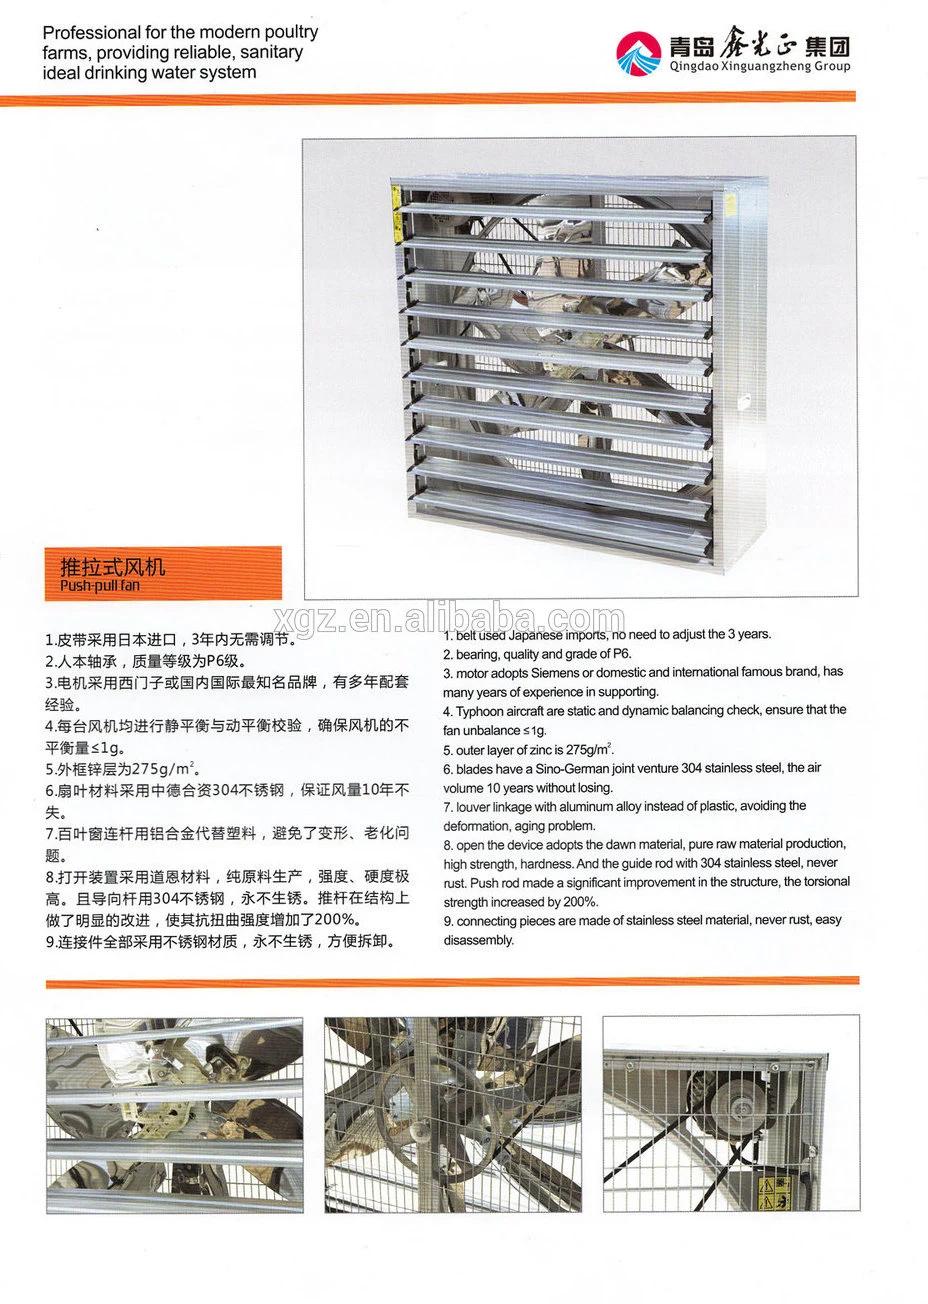 Free Rage Broiler Chicken Equipment From Xinguangzheng